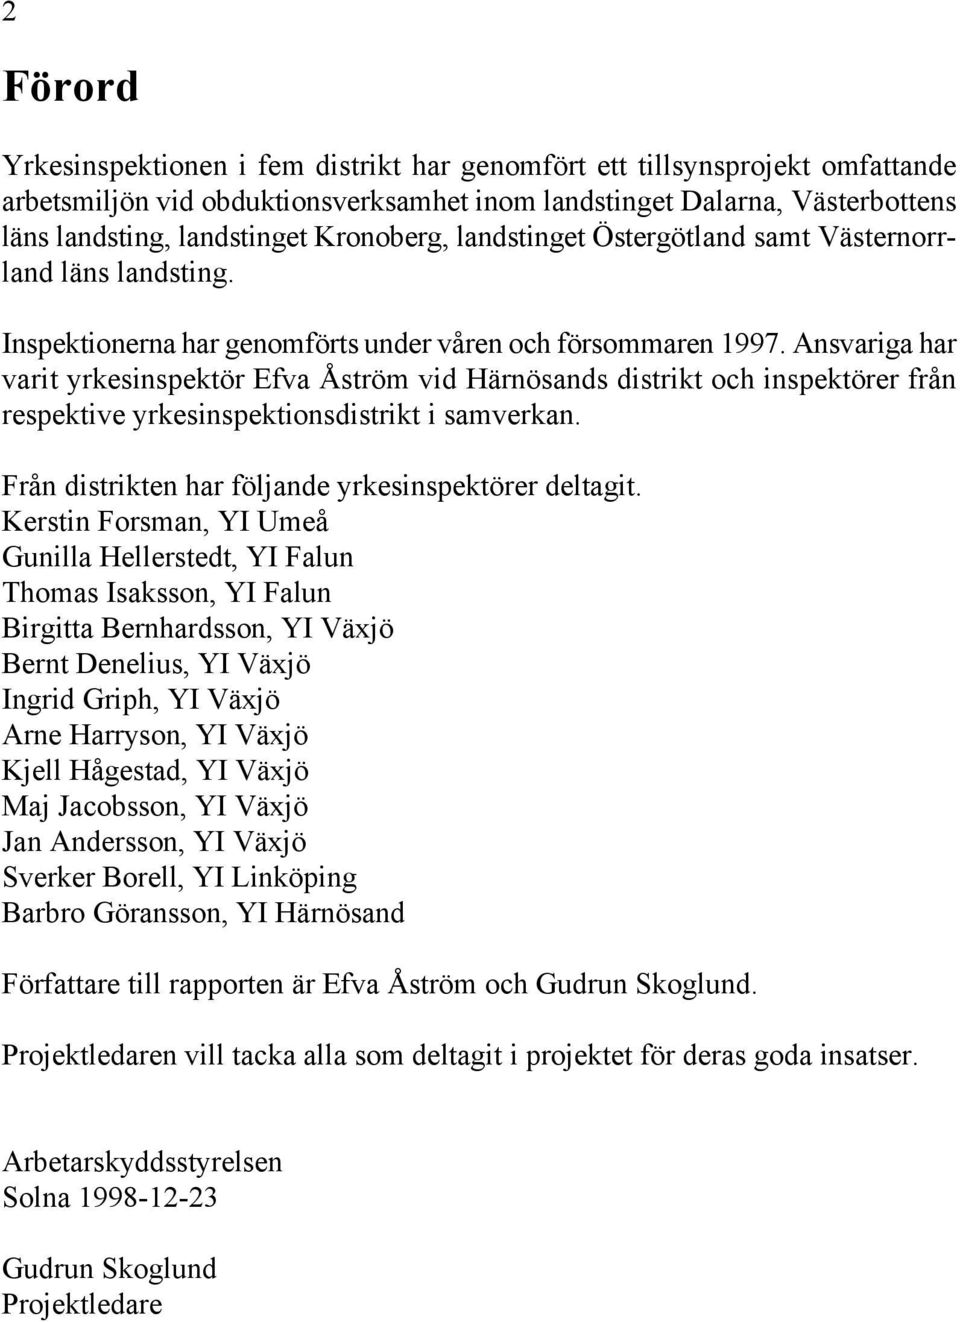 Ansvariga har varit yrkesinspektör Efva Åström vid Härnösands distrikt och inspektörer från respektive yrkesinspektionsdistrikt i samverkan. Från distrikten har följande yrkesinspektörer deltagit.